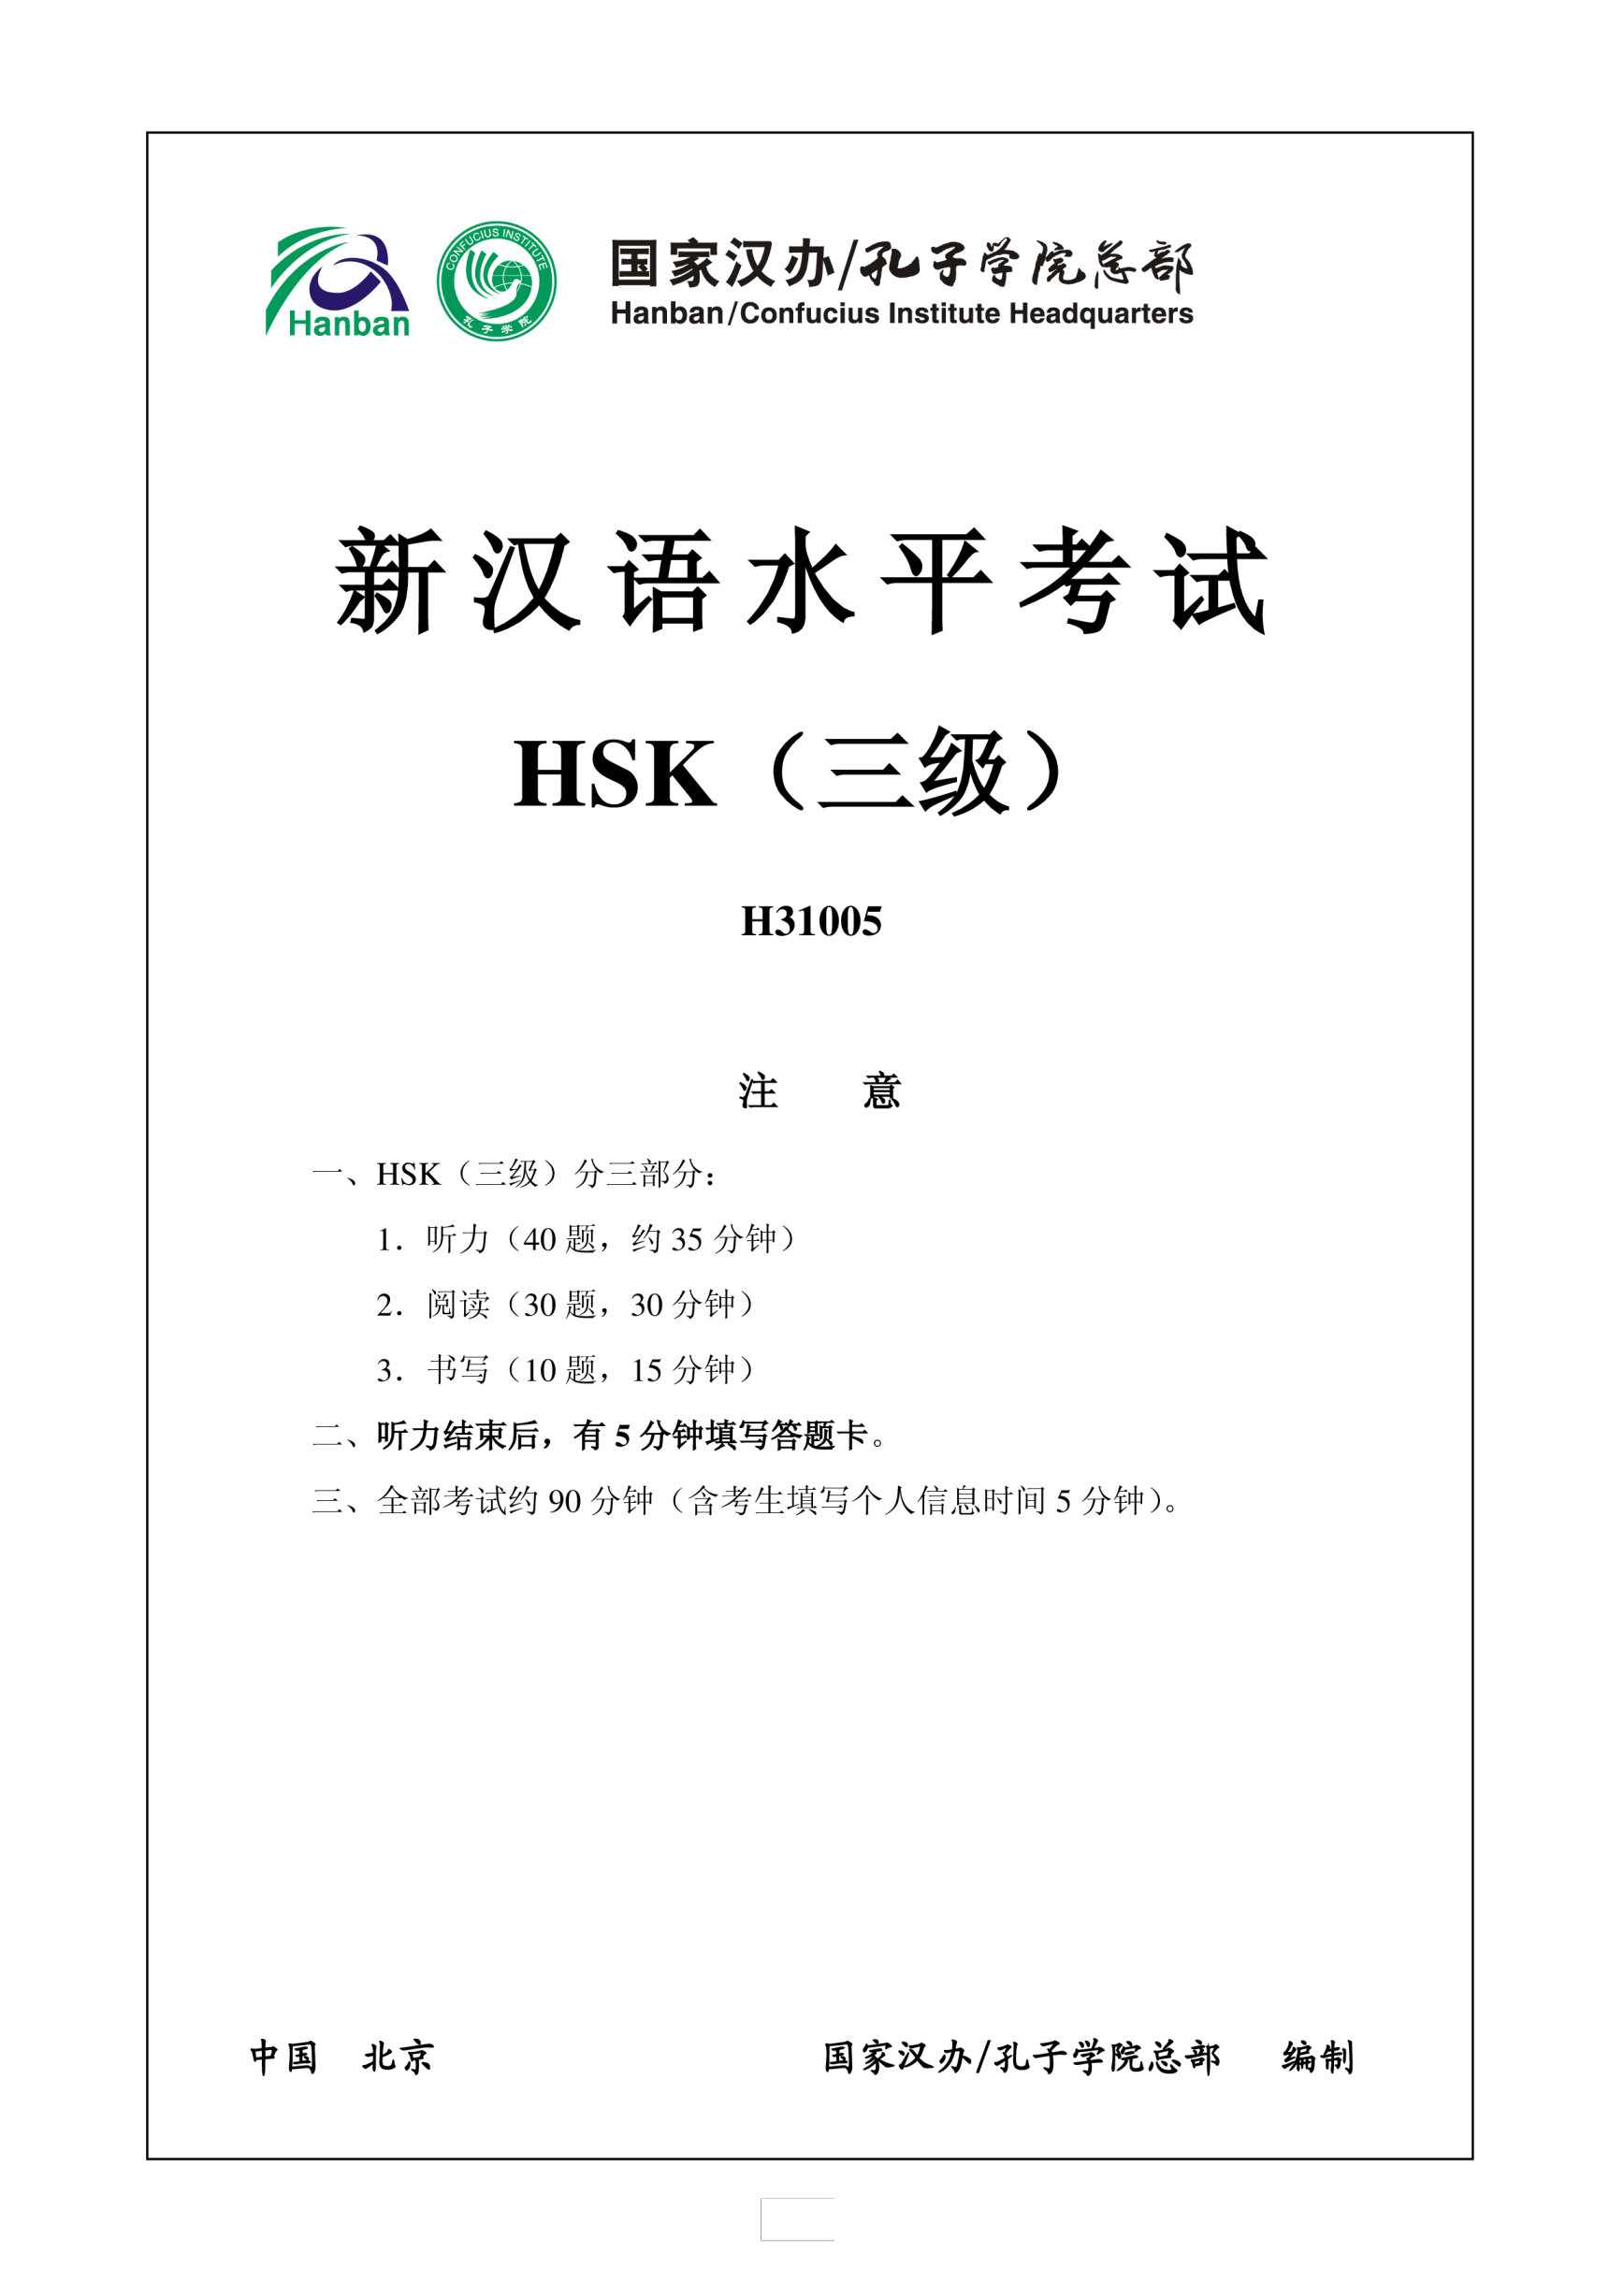 Vorschaubild der VorlageHSK3 Chinese Exam including Answers # HSK3 H31005